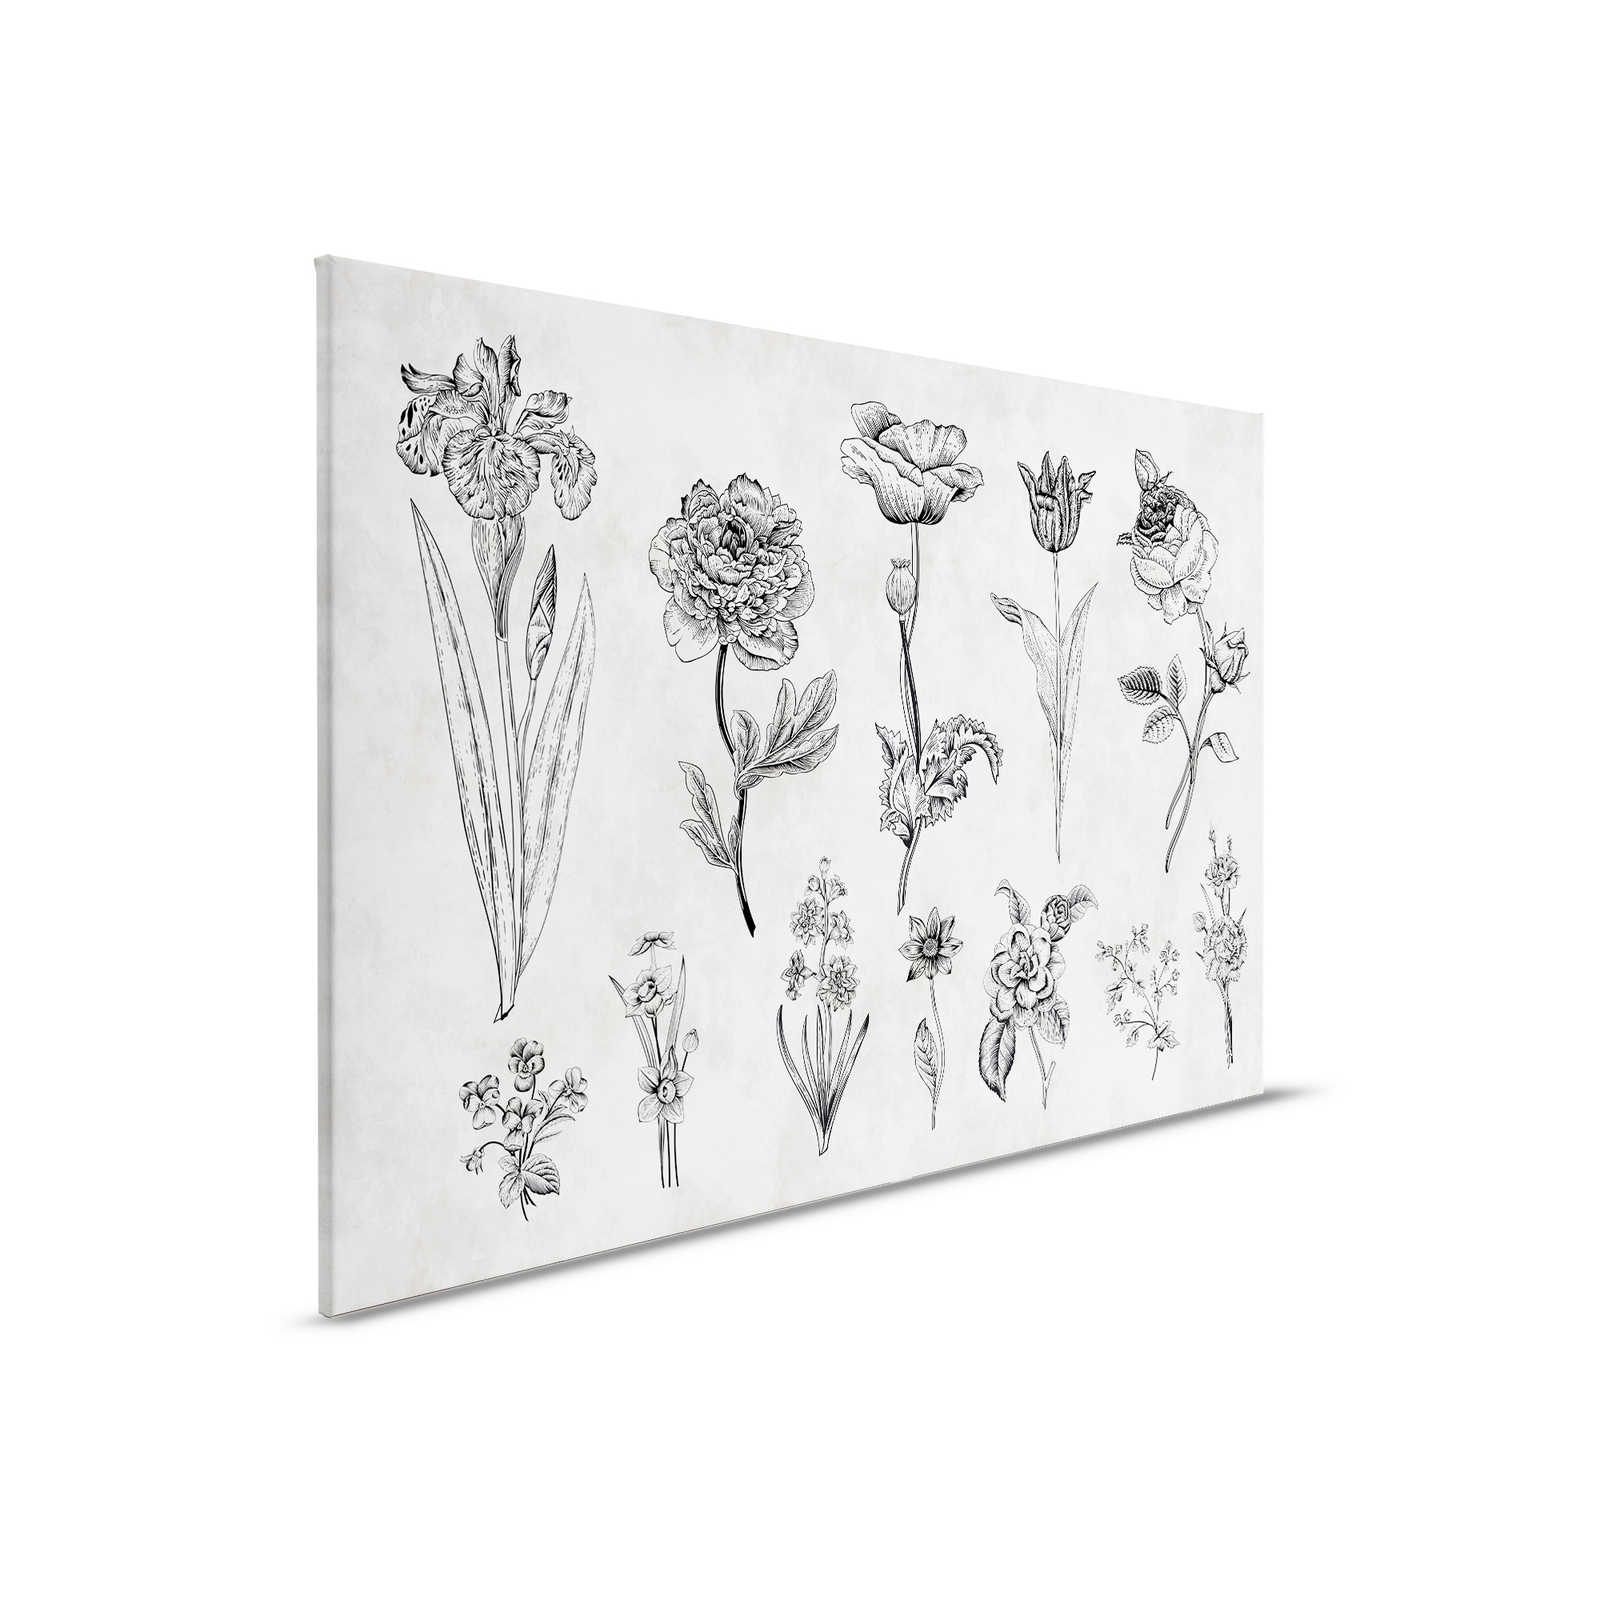         Leinwandbild Blumen im Zeichenstil – 0,90 m x 0,60 m
    